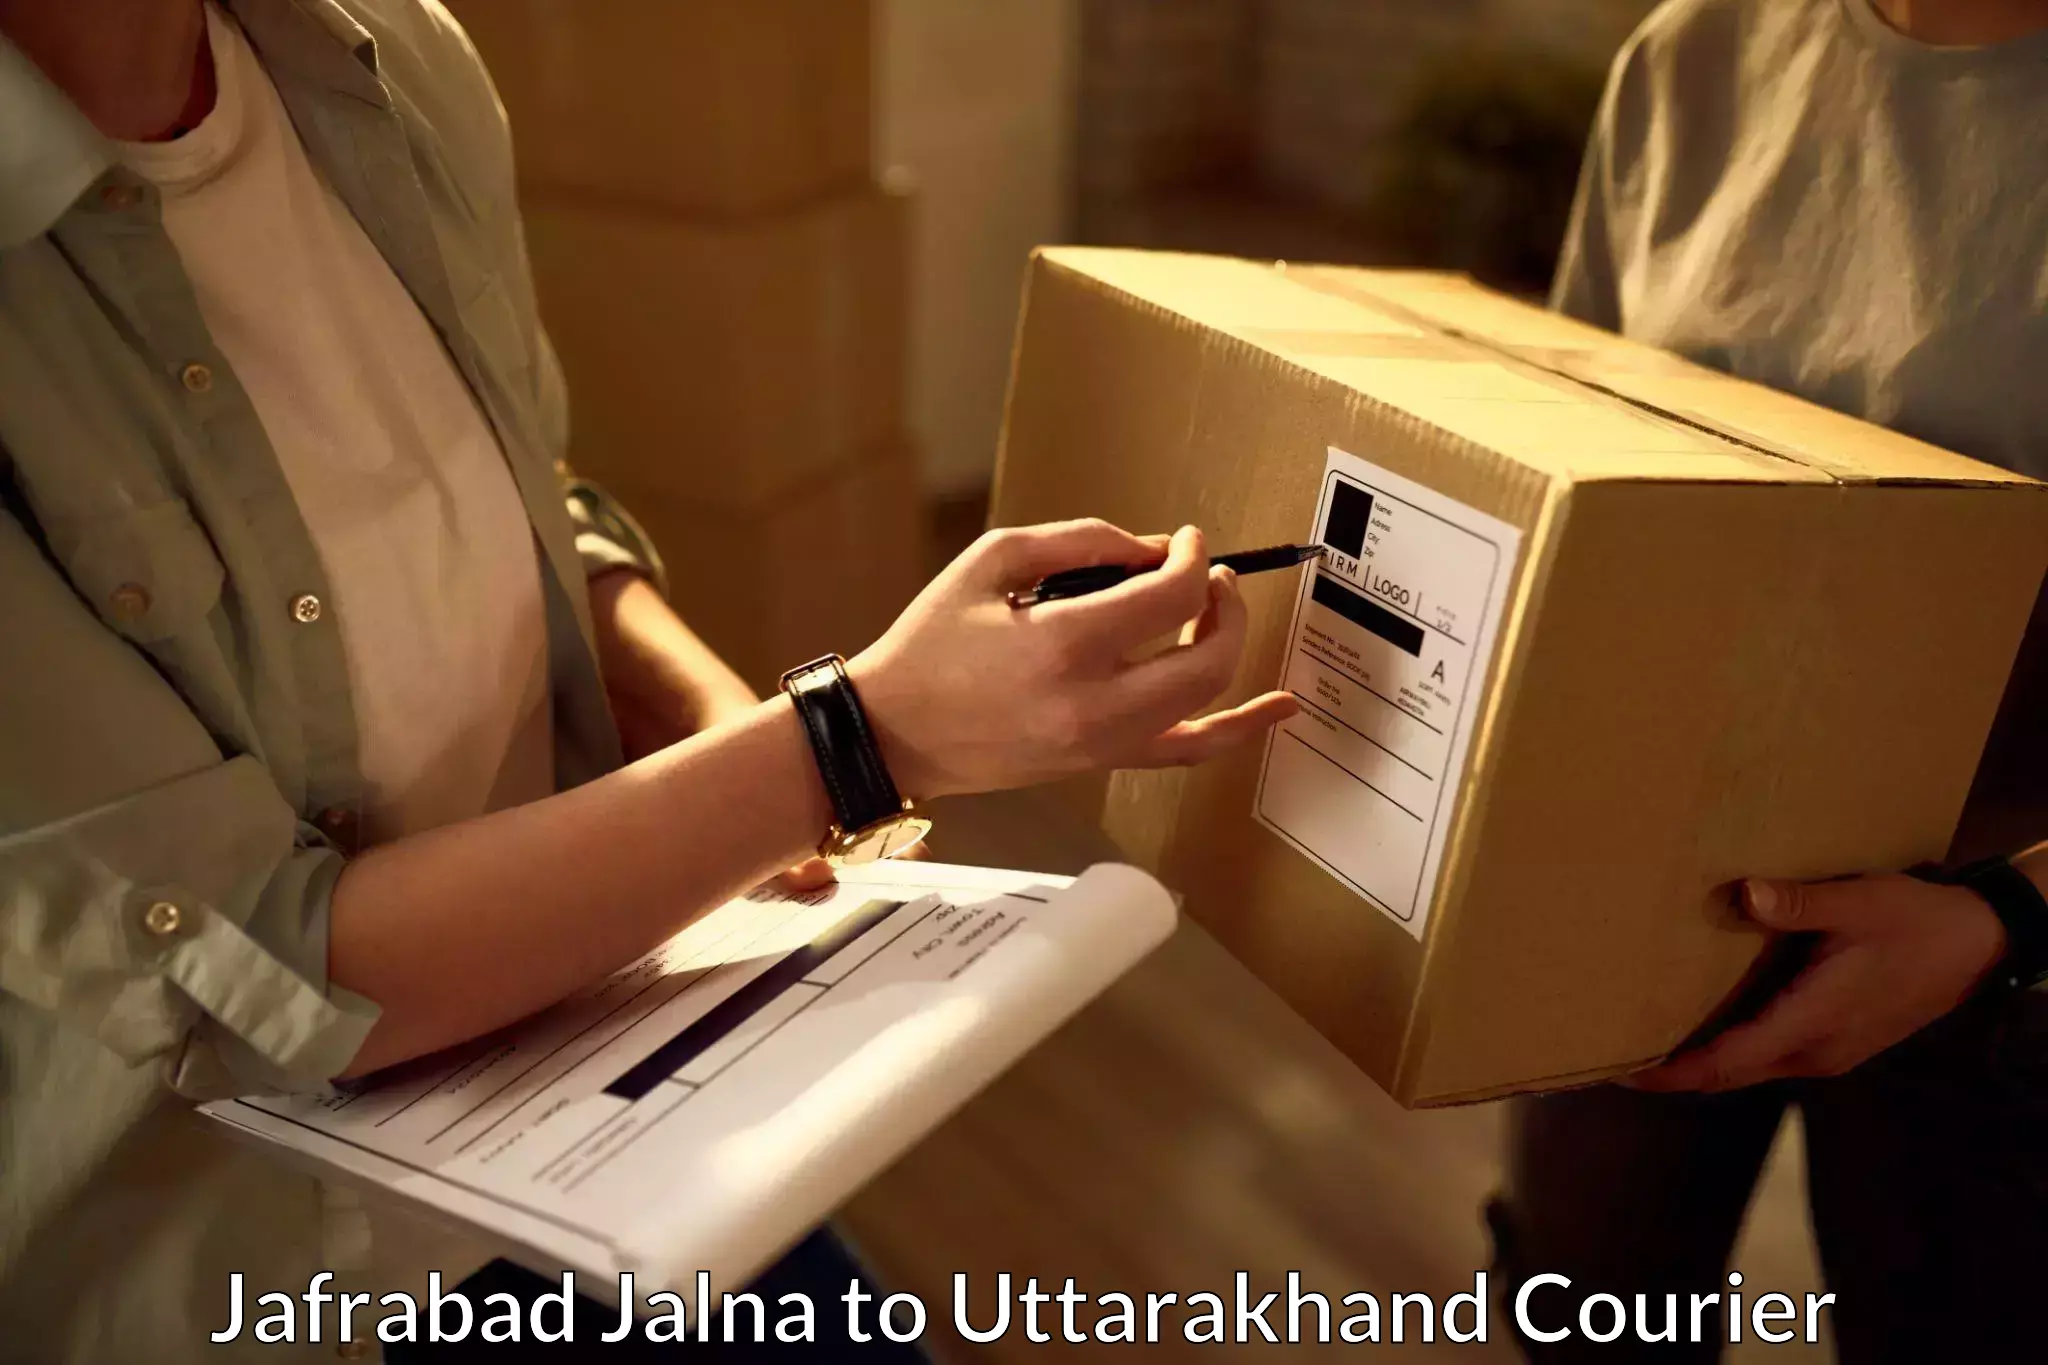 Advanced shipping network Jafrabad Jalna to Uttarakhand